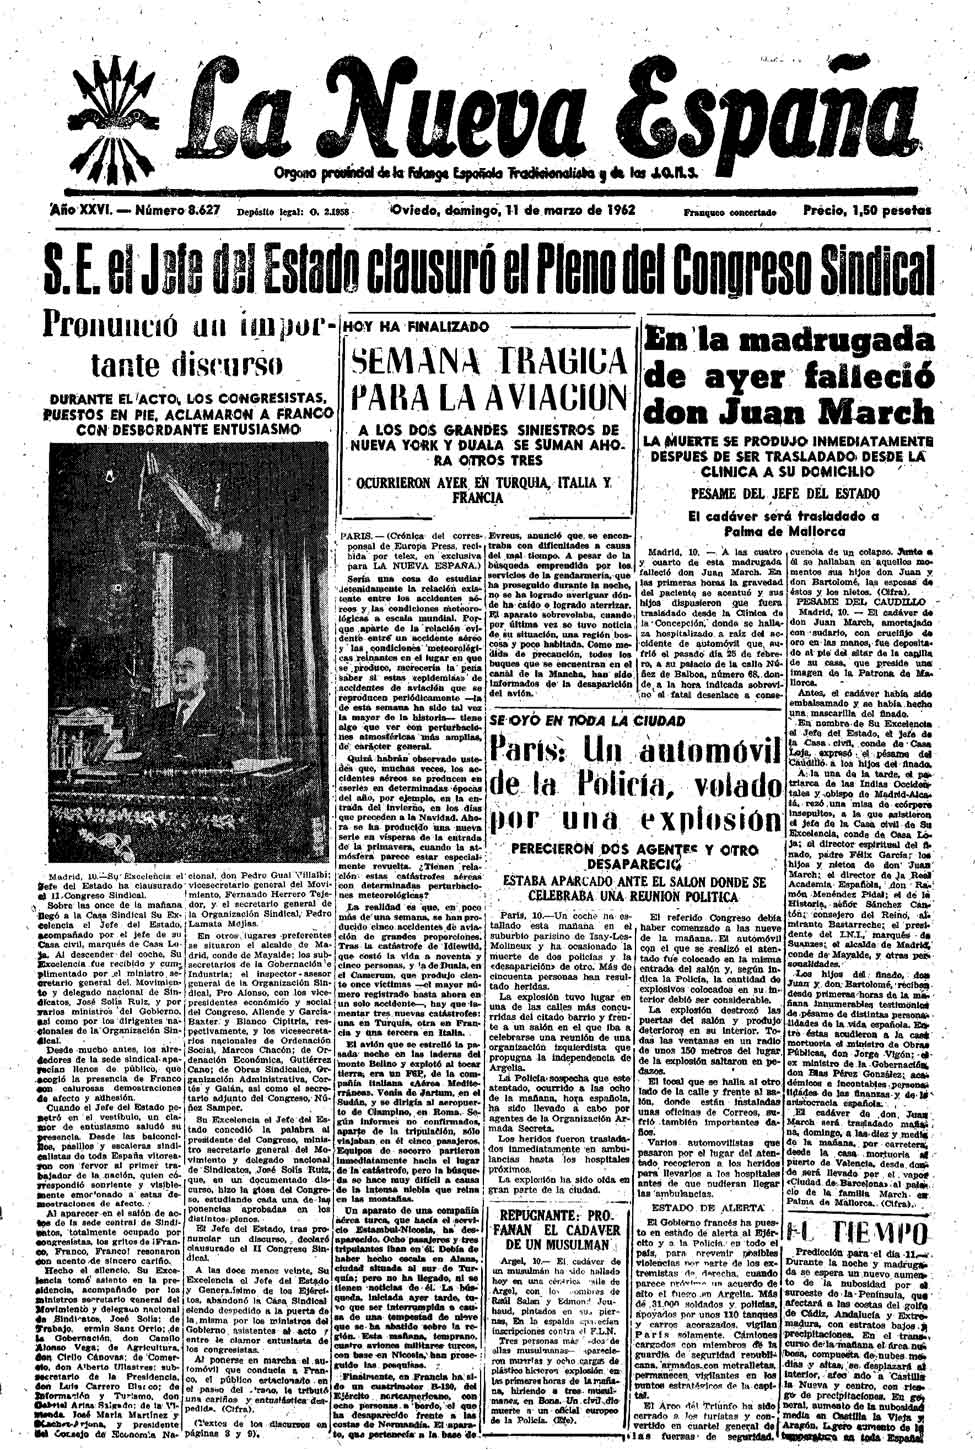 Portada del Domingo, 11 de Marzo de 1962